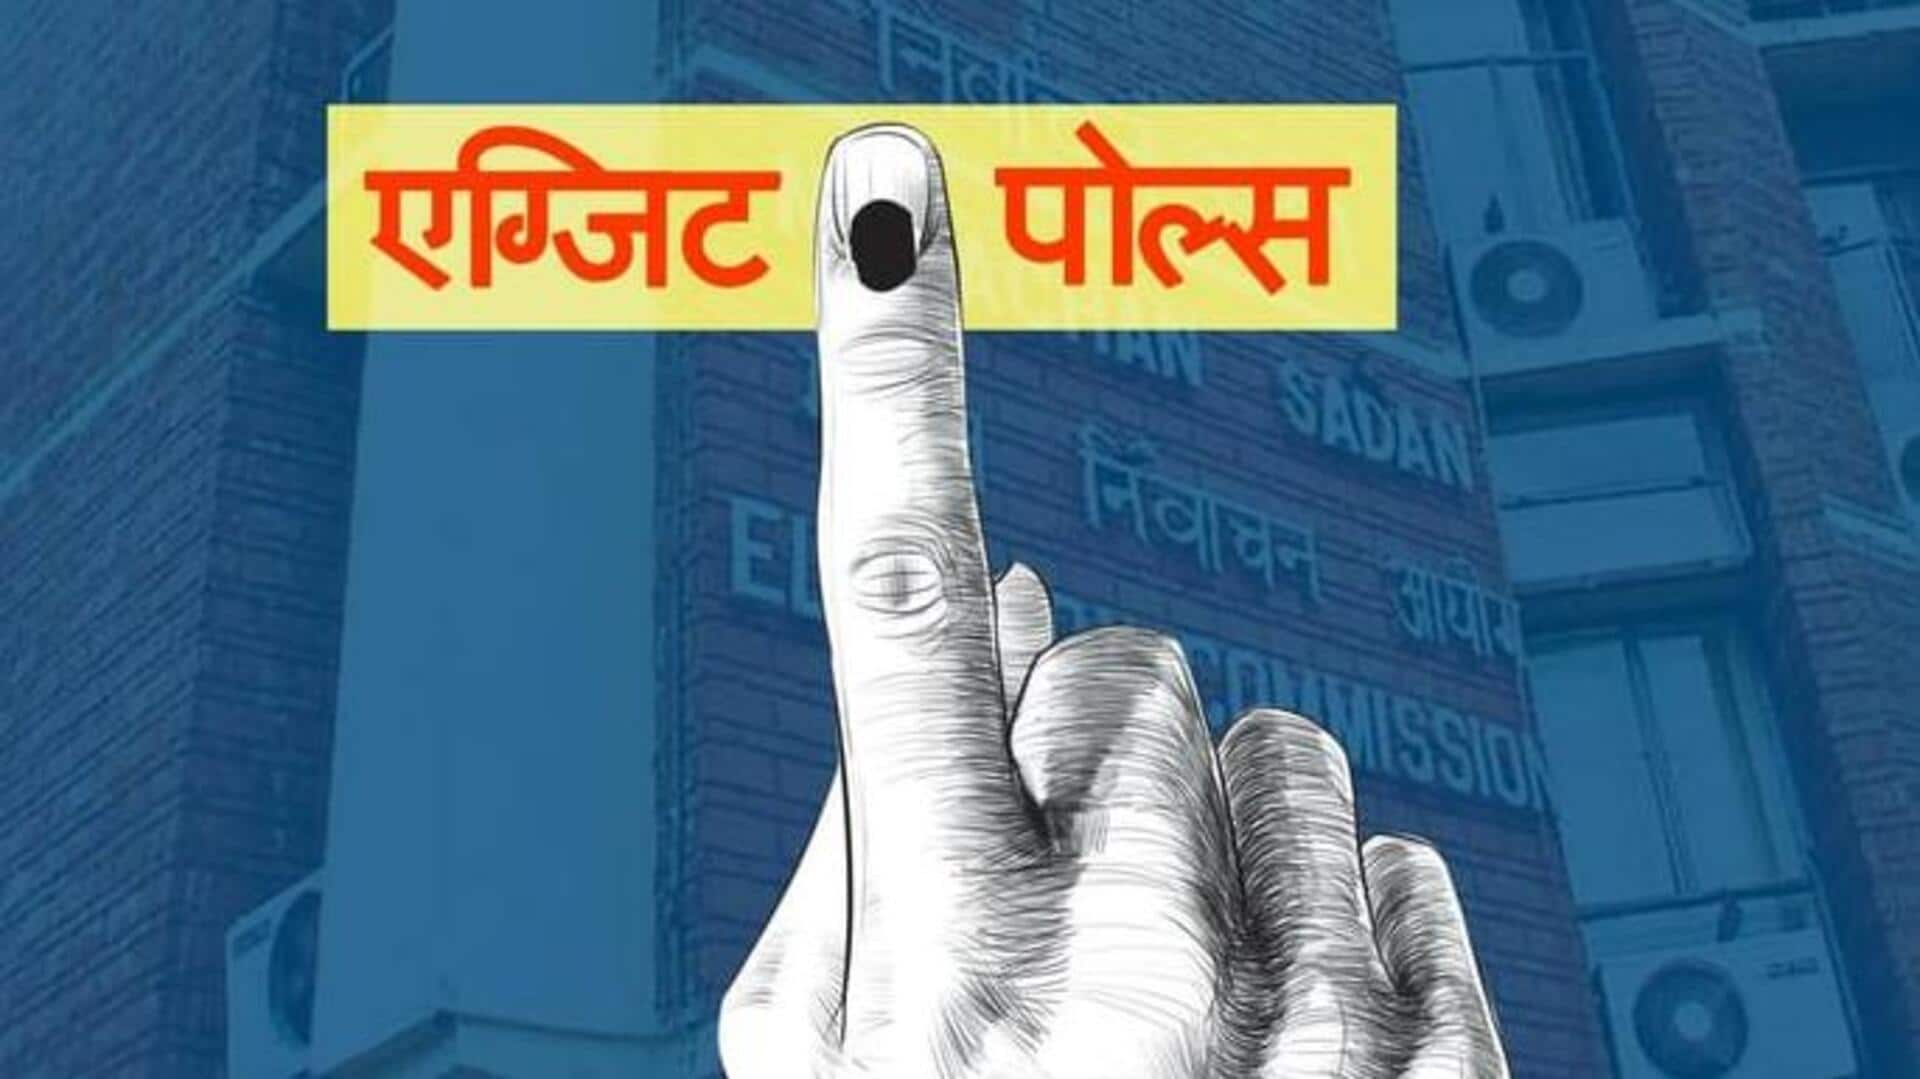 एक्जिट पोल: छत्तीसगढ़ विधानसभा चुनाव में कांग्रेस आगे, भाजपा के साथ टक्कर